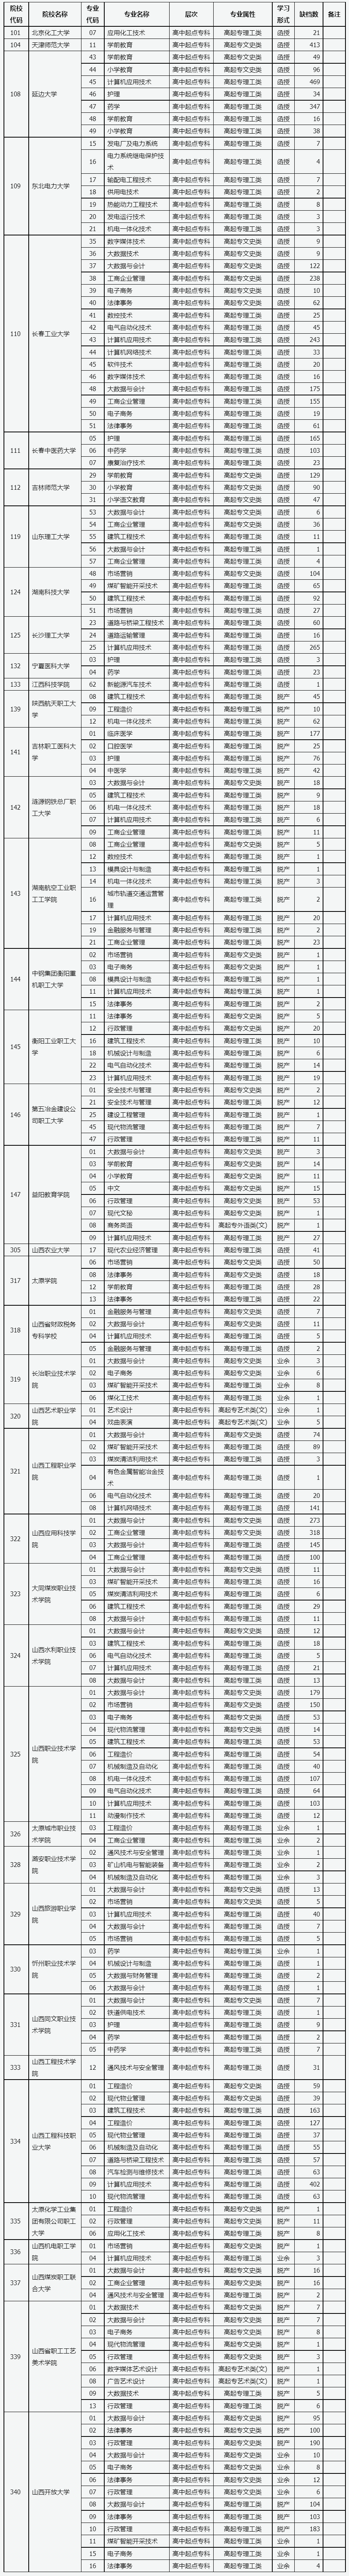 山西省2022年成人高校招生征集志愿公告第8号.png